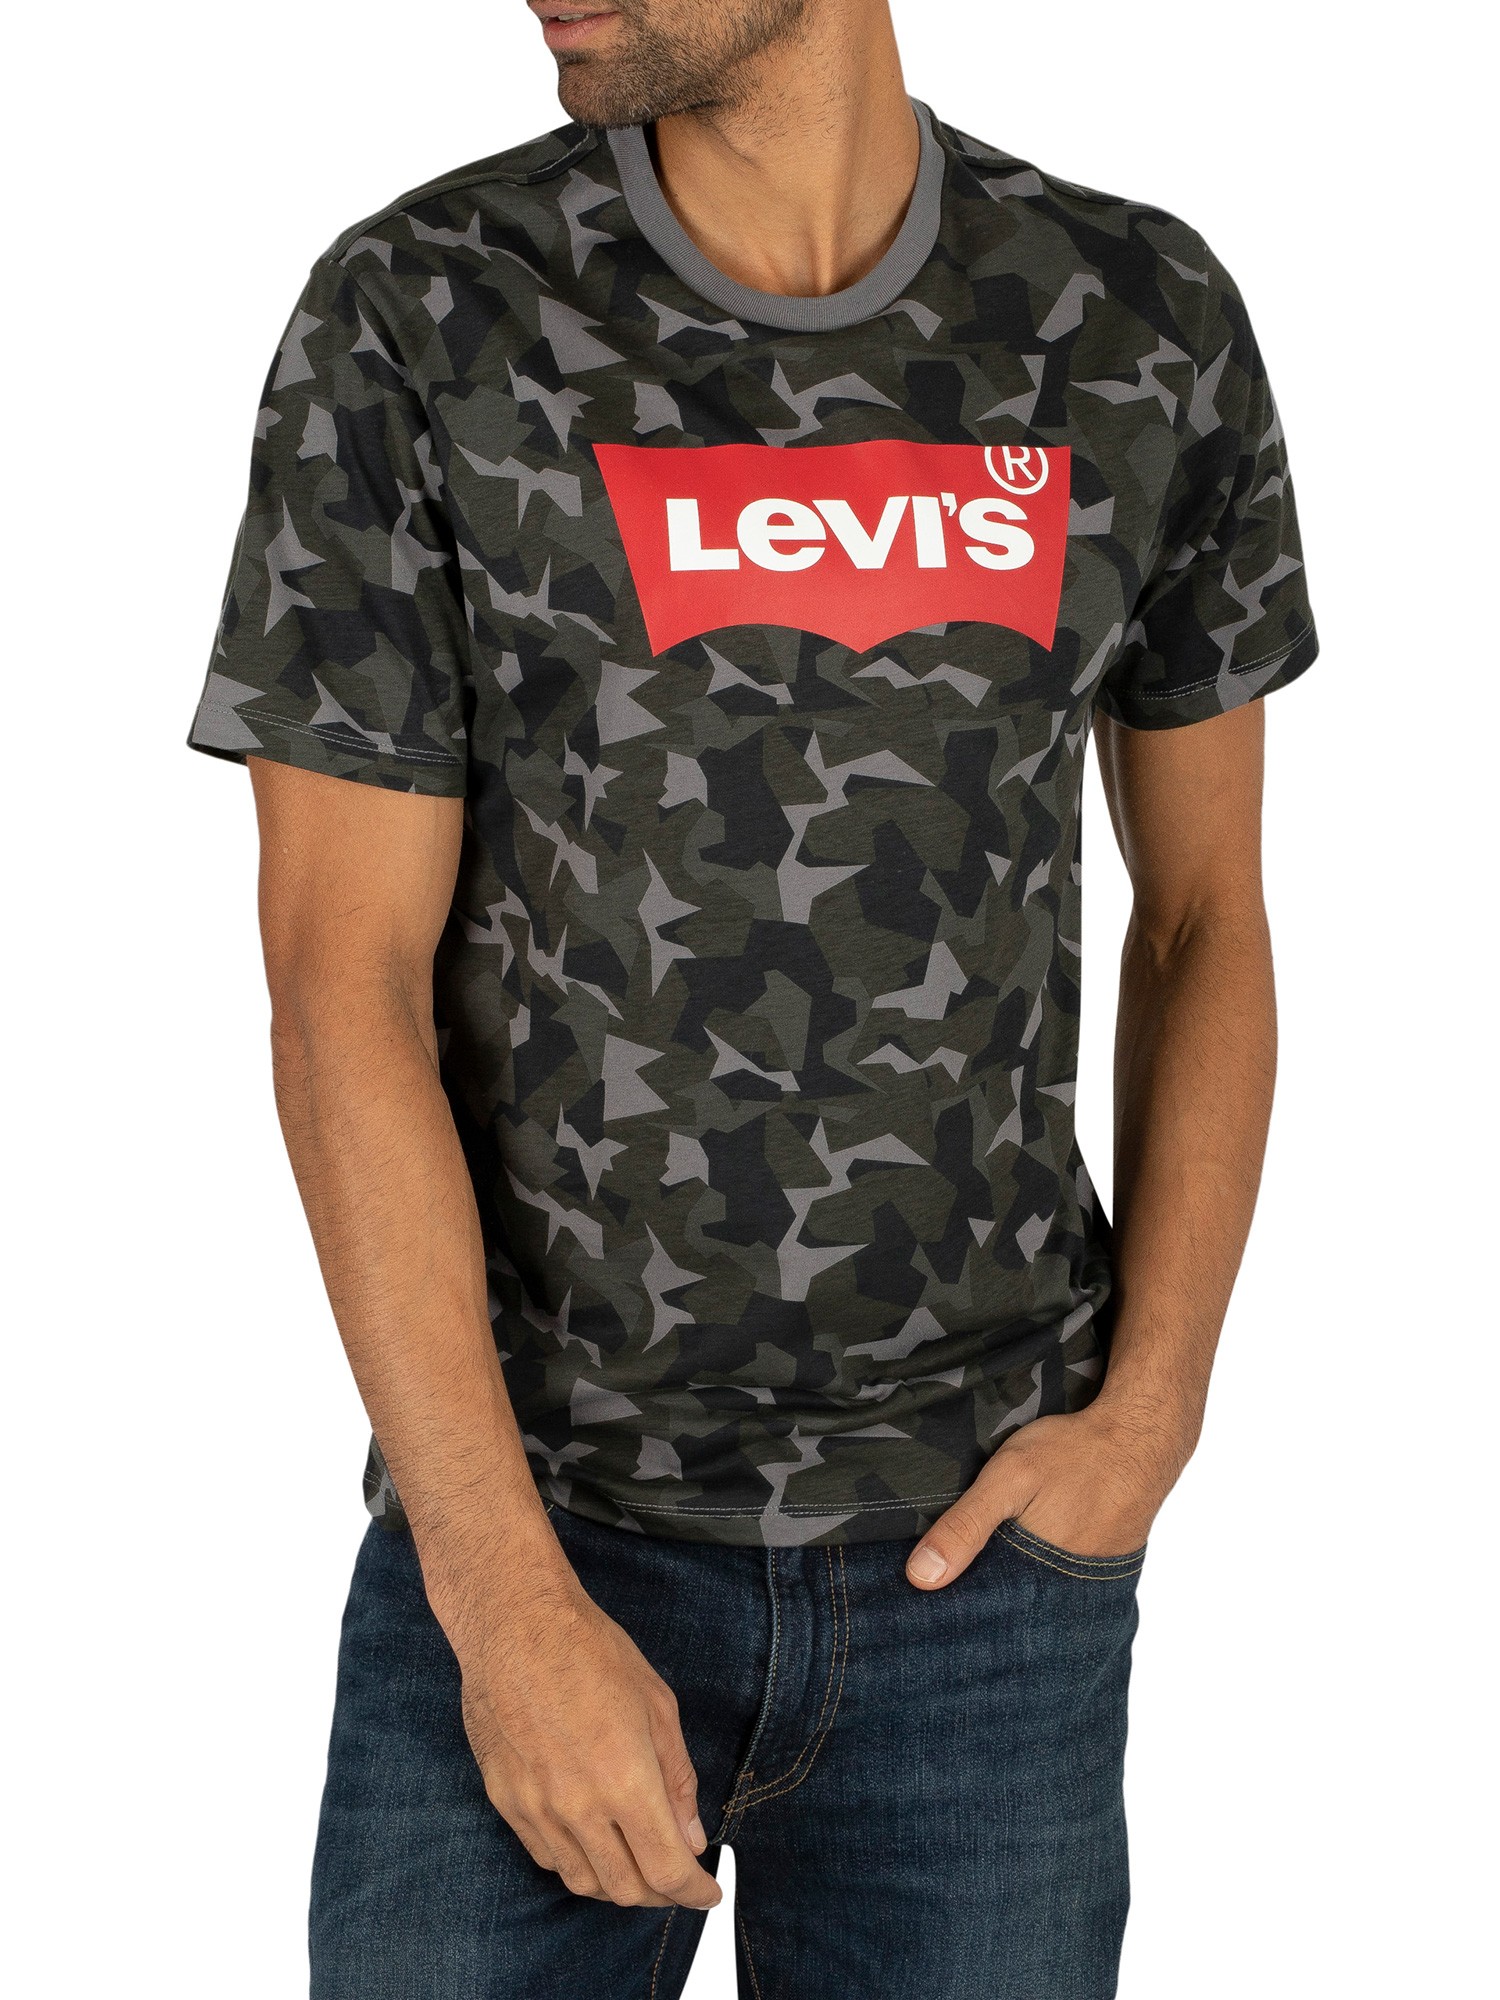 levi's camo shirt